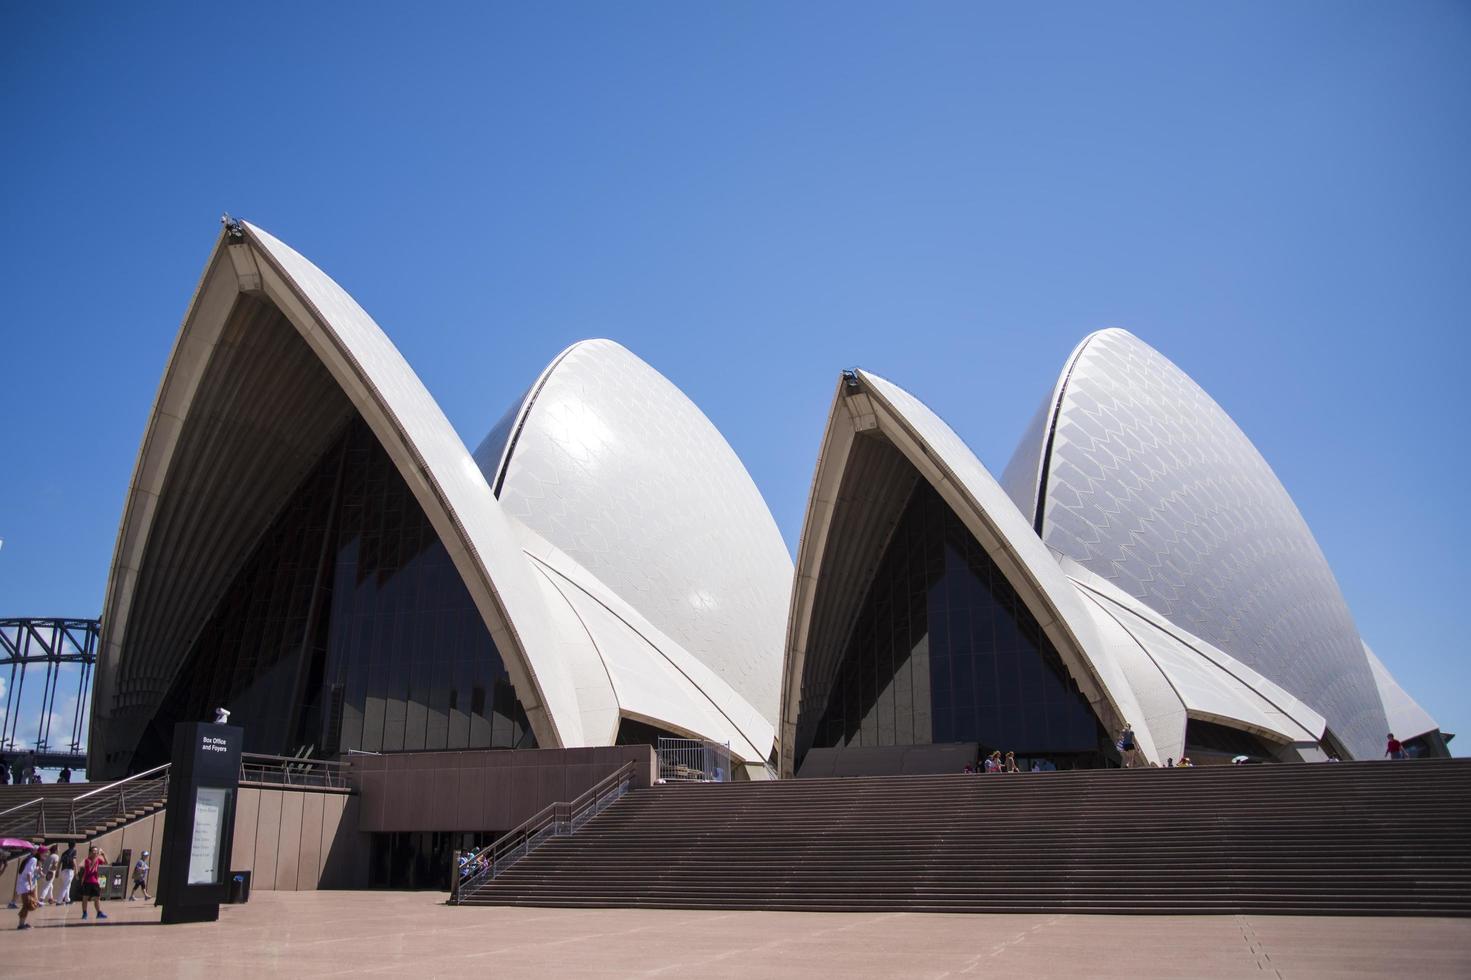 sydney, austrália, 12 de fevereiro de 2015 - vista na sidney opera house em sydney, austrália. foi projetado pelo arquiteto dinamarquês jorn utzon e foi inaugurado em 20 de outubro de 1973. foto